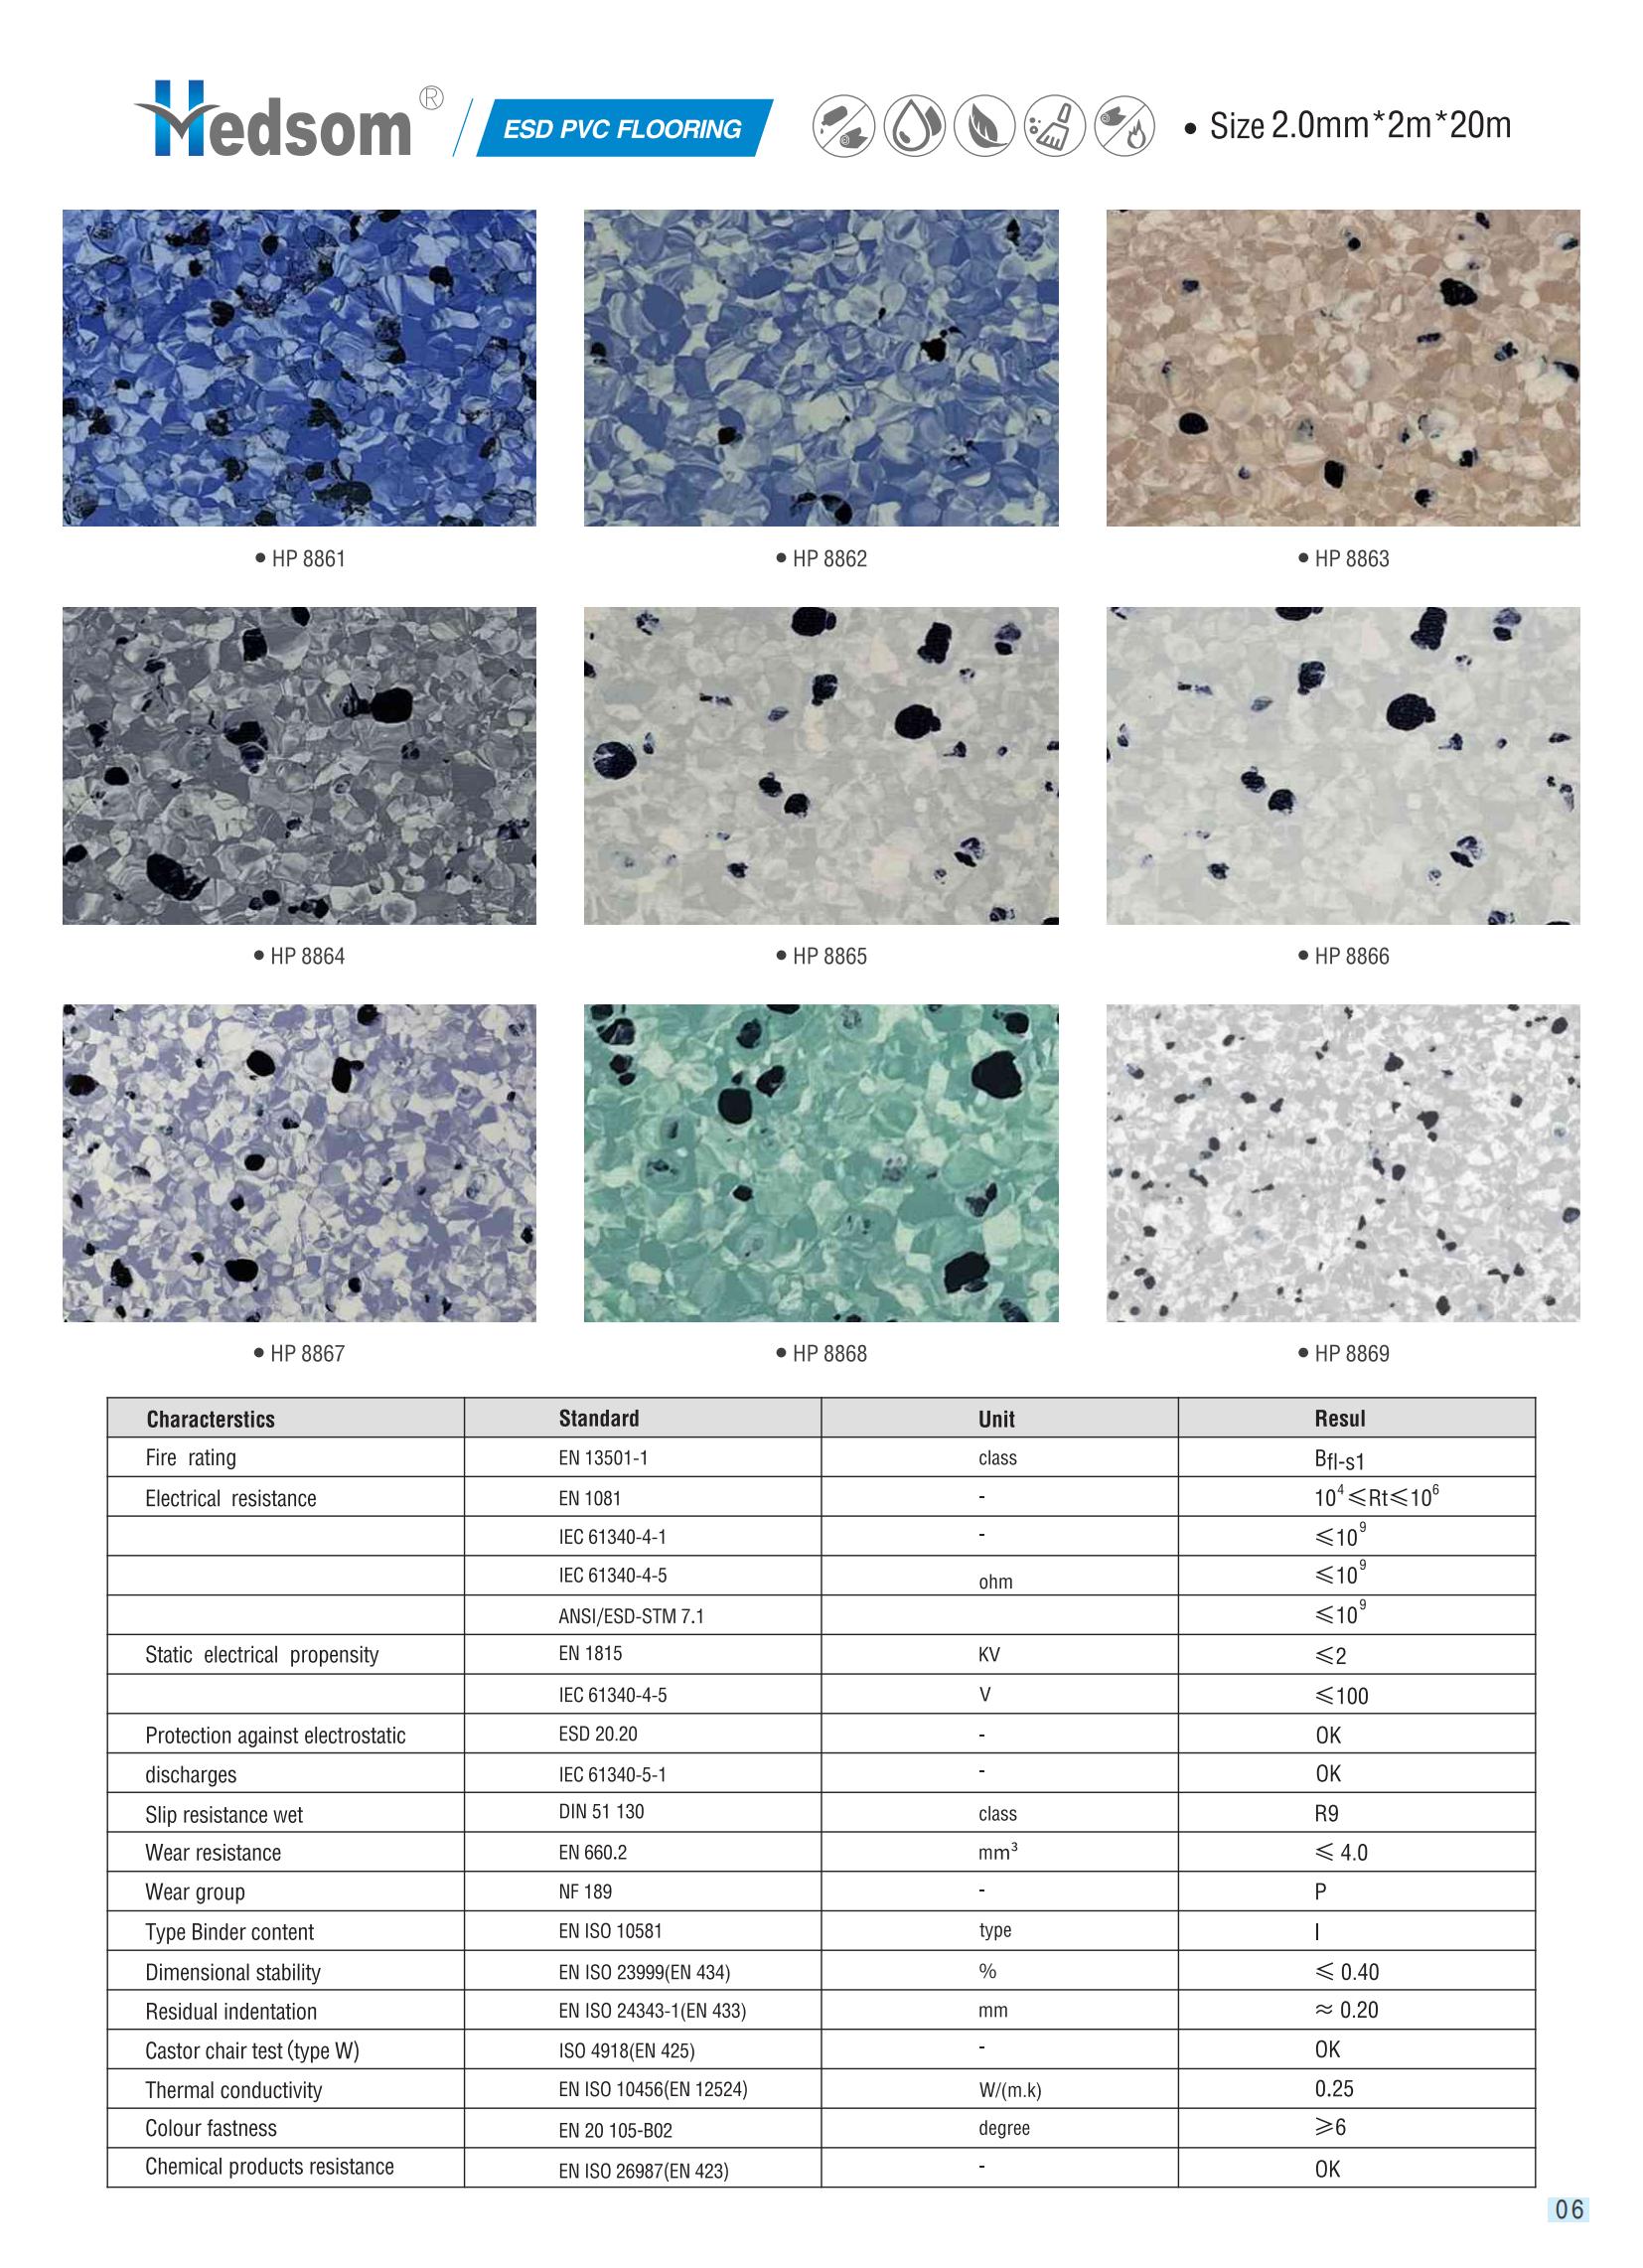 Hedsom PVC Anti bacterial homogeneous Flooring(Moon)-2021_06.jpg